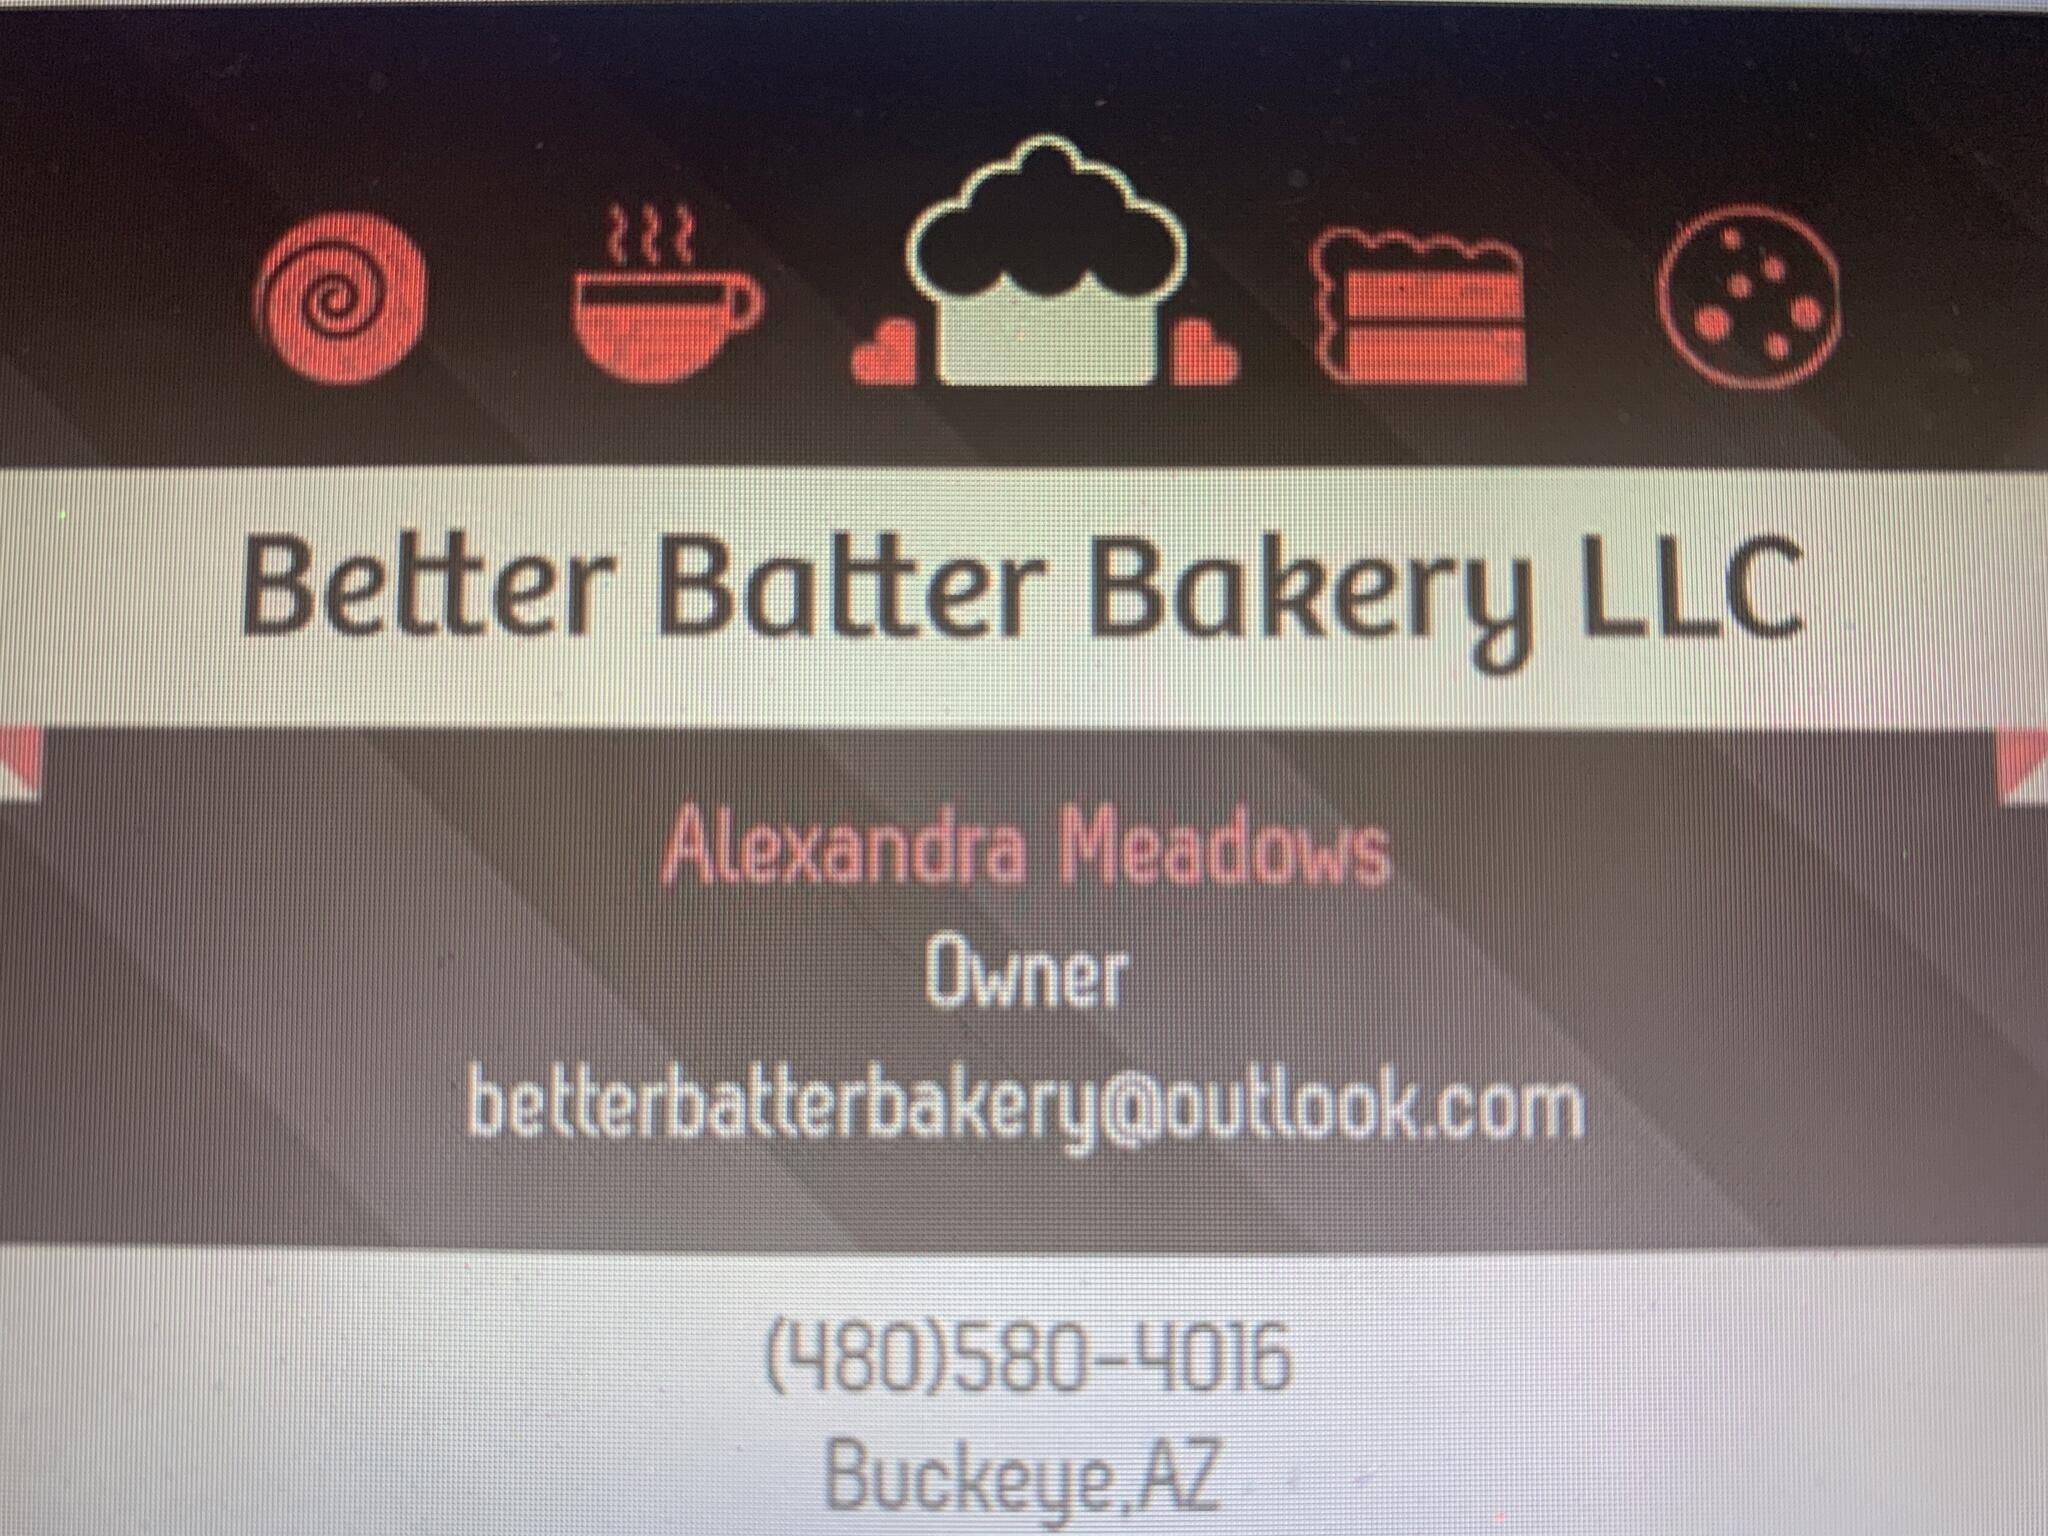 Better Batter Bakery